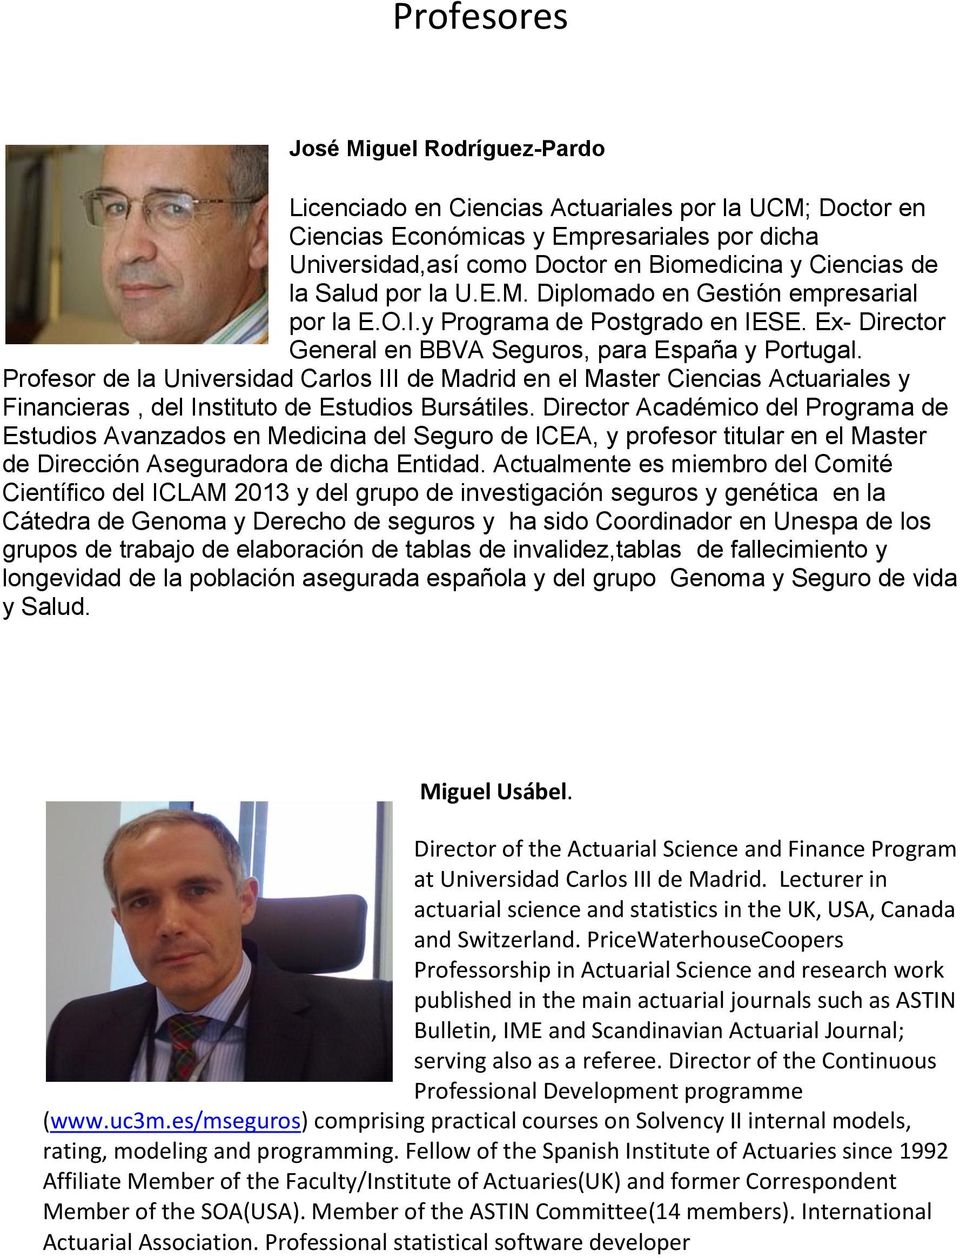 Profesor de la Universidad Carlos III de Madrid en el Master Ciencias Actuariales y Financieras, del Instituto de Estudios Bursátiles.